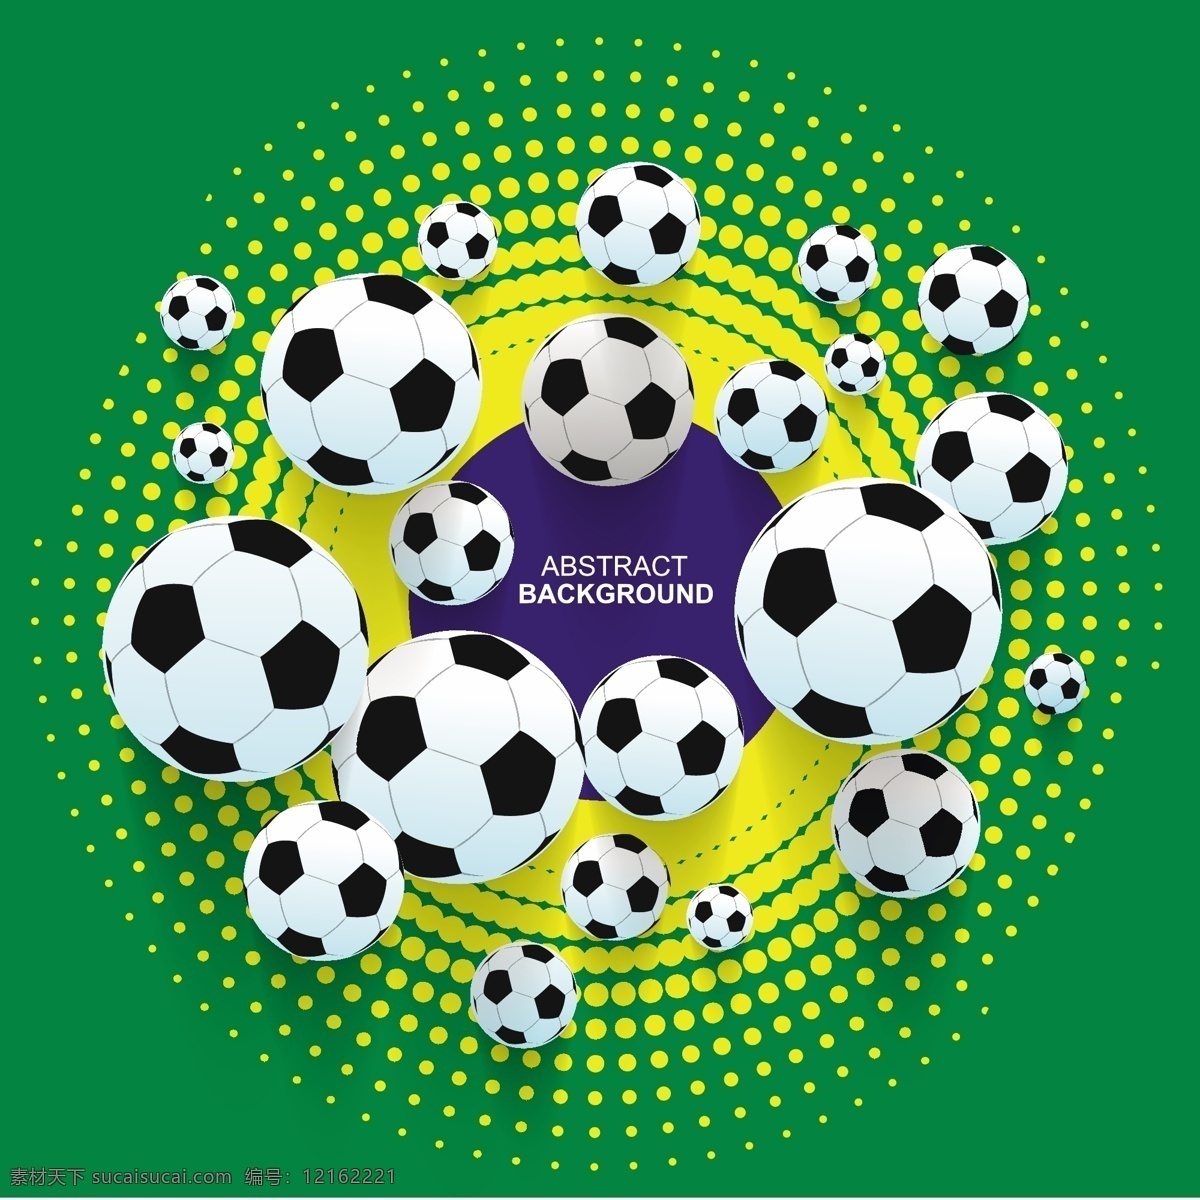 足球 欧洲世界杯 手绘 世界杯 欧洲杯 亚洲杯 世界杯海报 世界杯背景 足球俱乐部 足球运动 体育运动 矢量 生活百科 体育用品